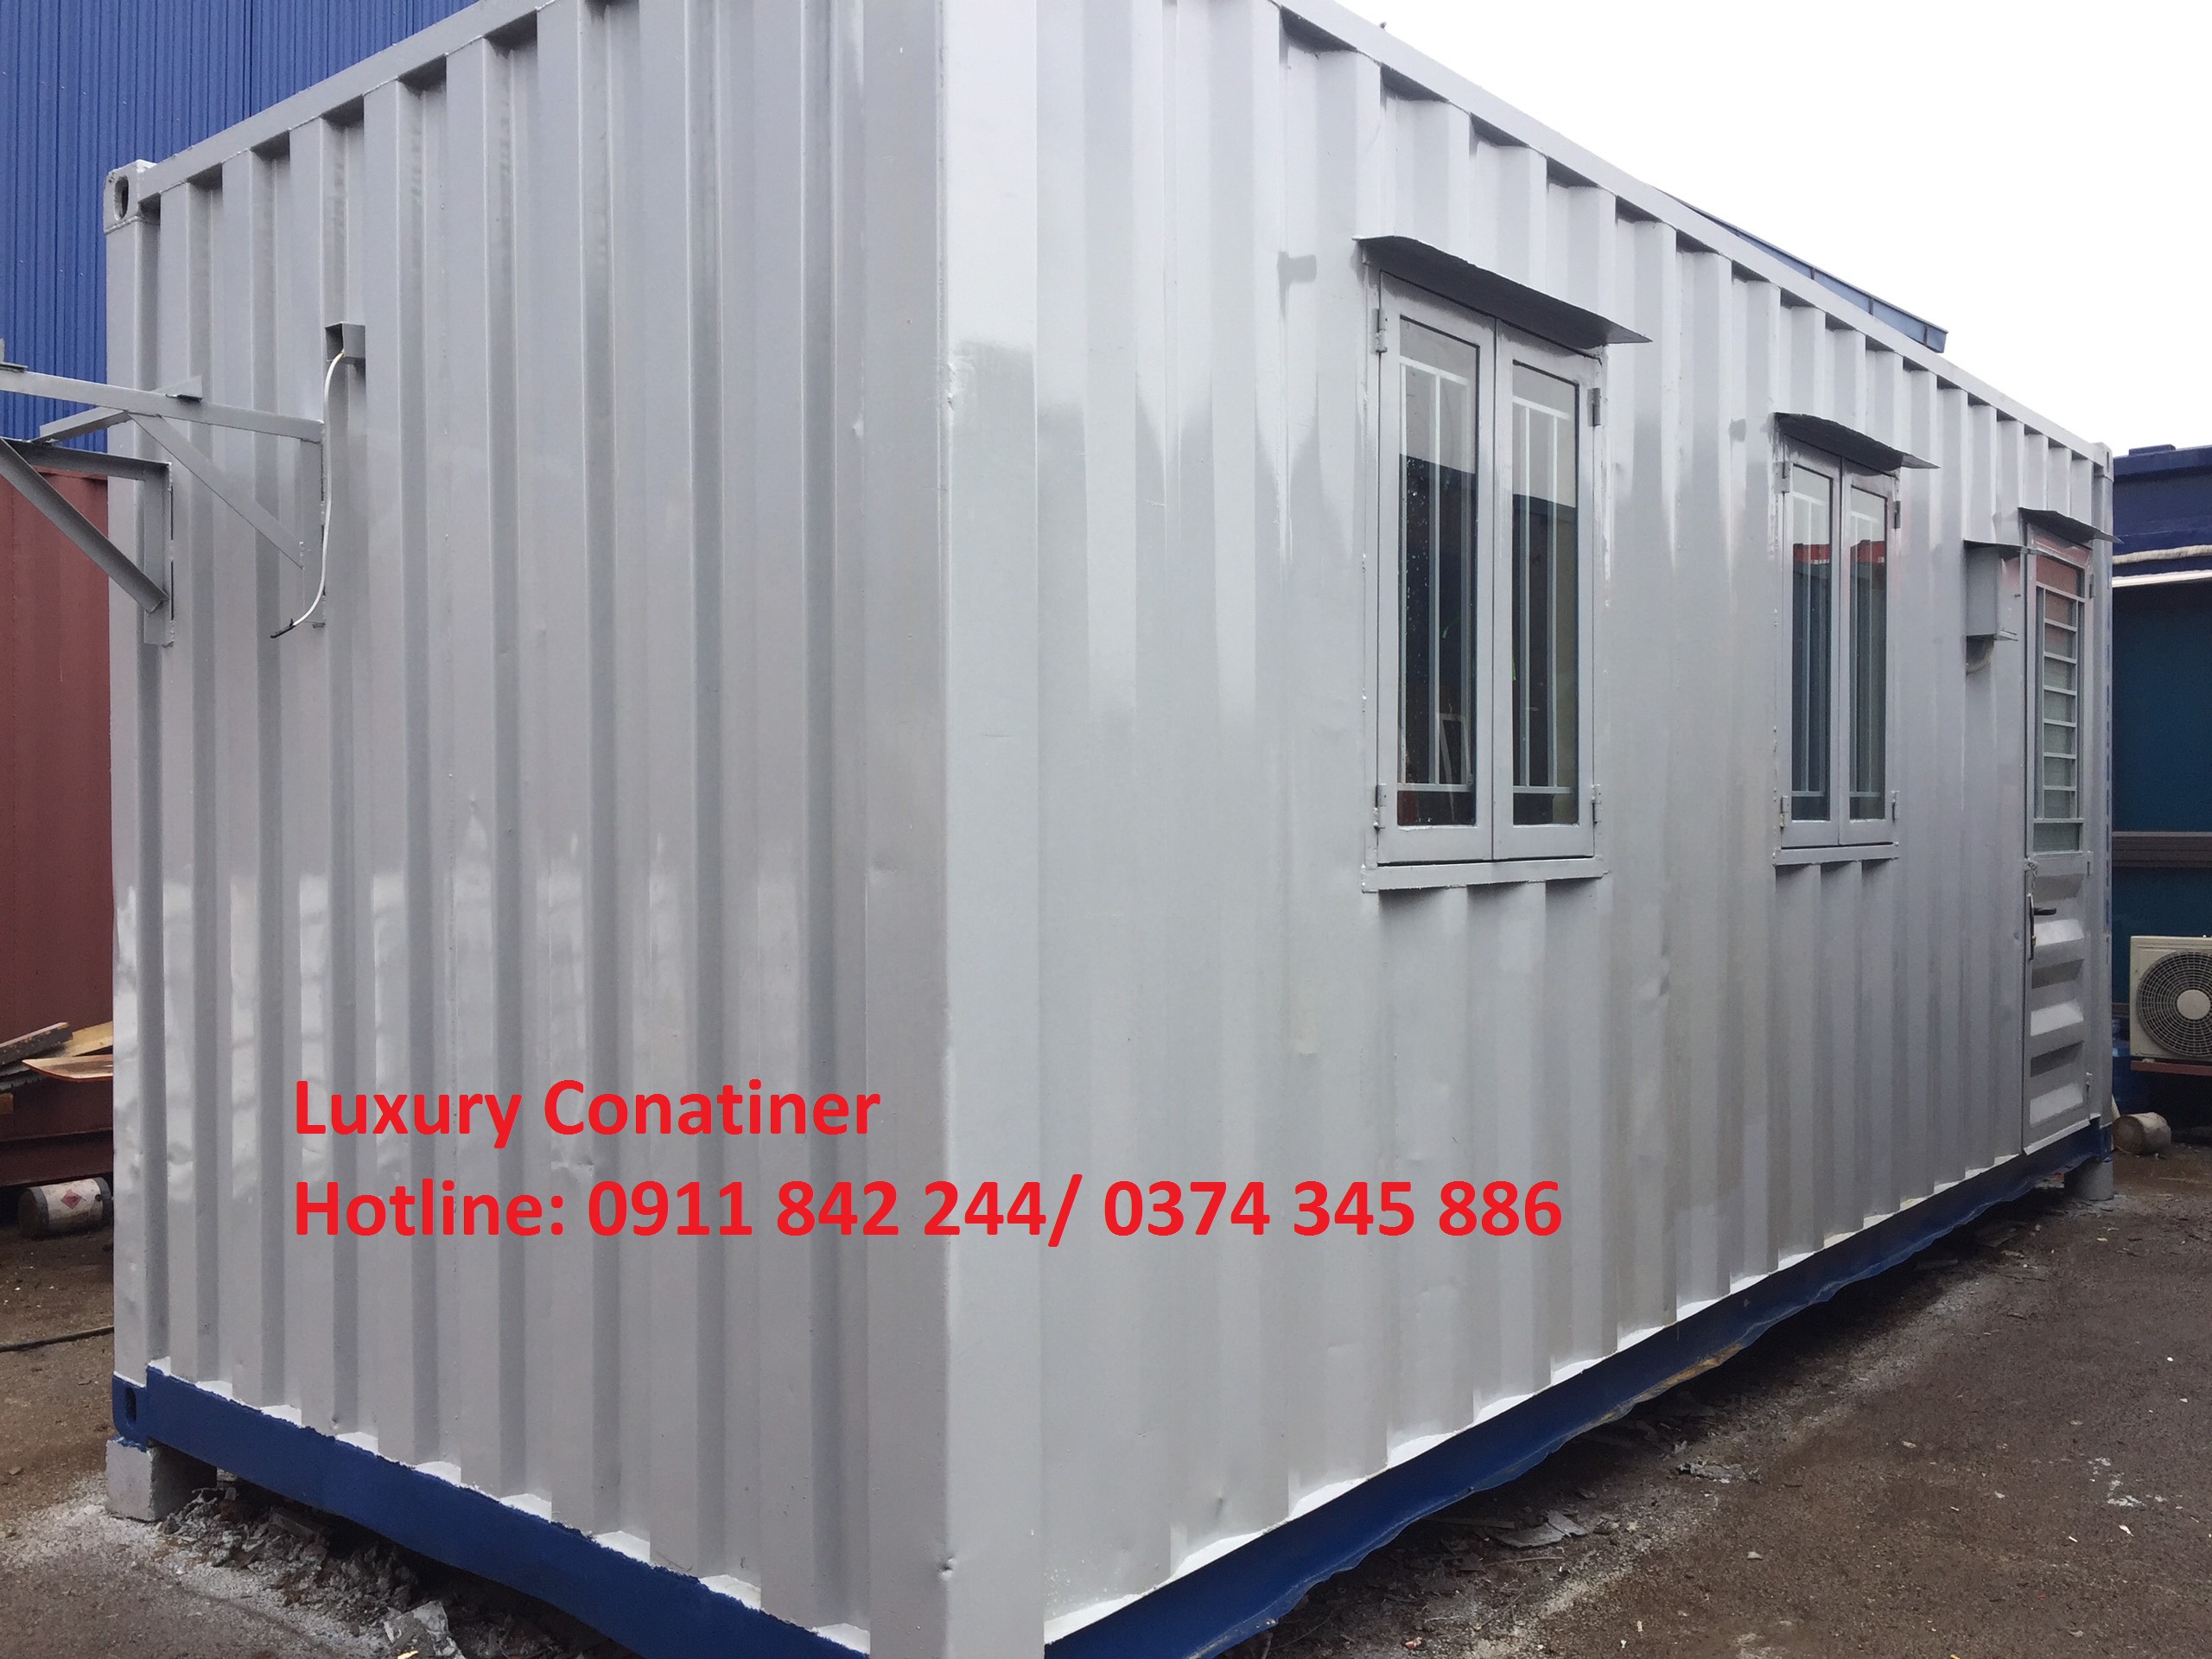 Bán và cho thuê container văn phòng 20 feet giá rẻ tại Quảng Ninh Hotline : 0374 345 886 Ms Thanh